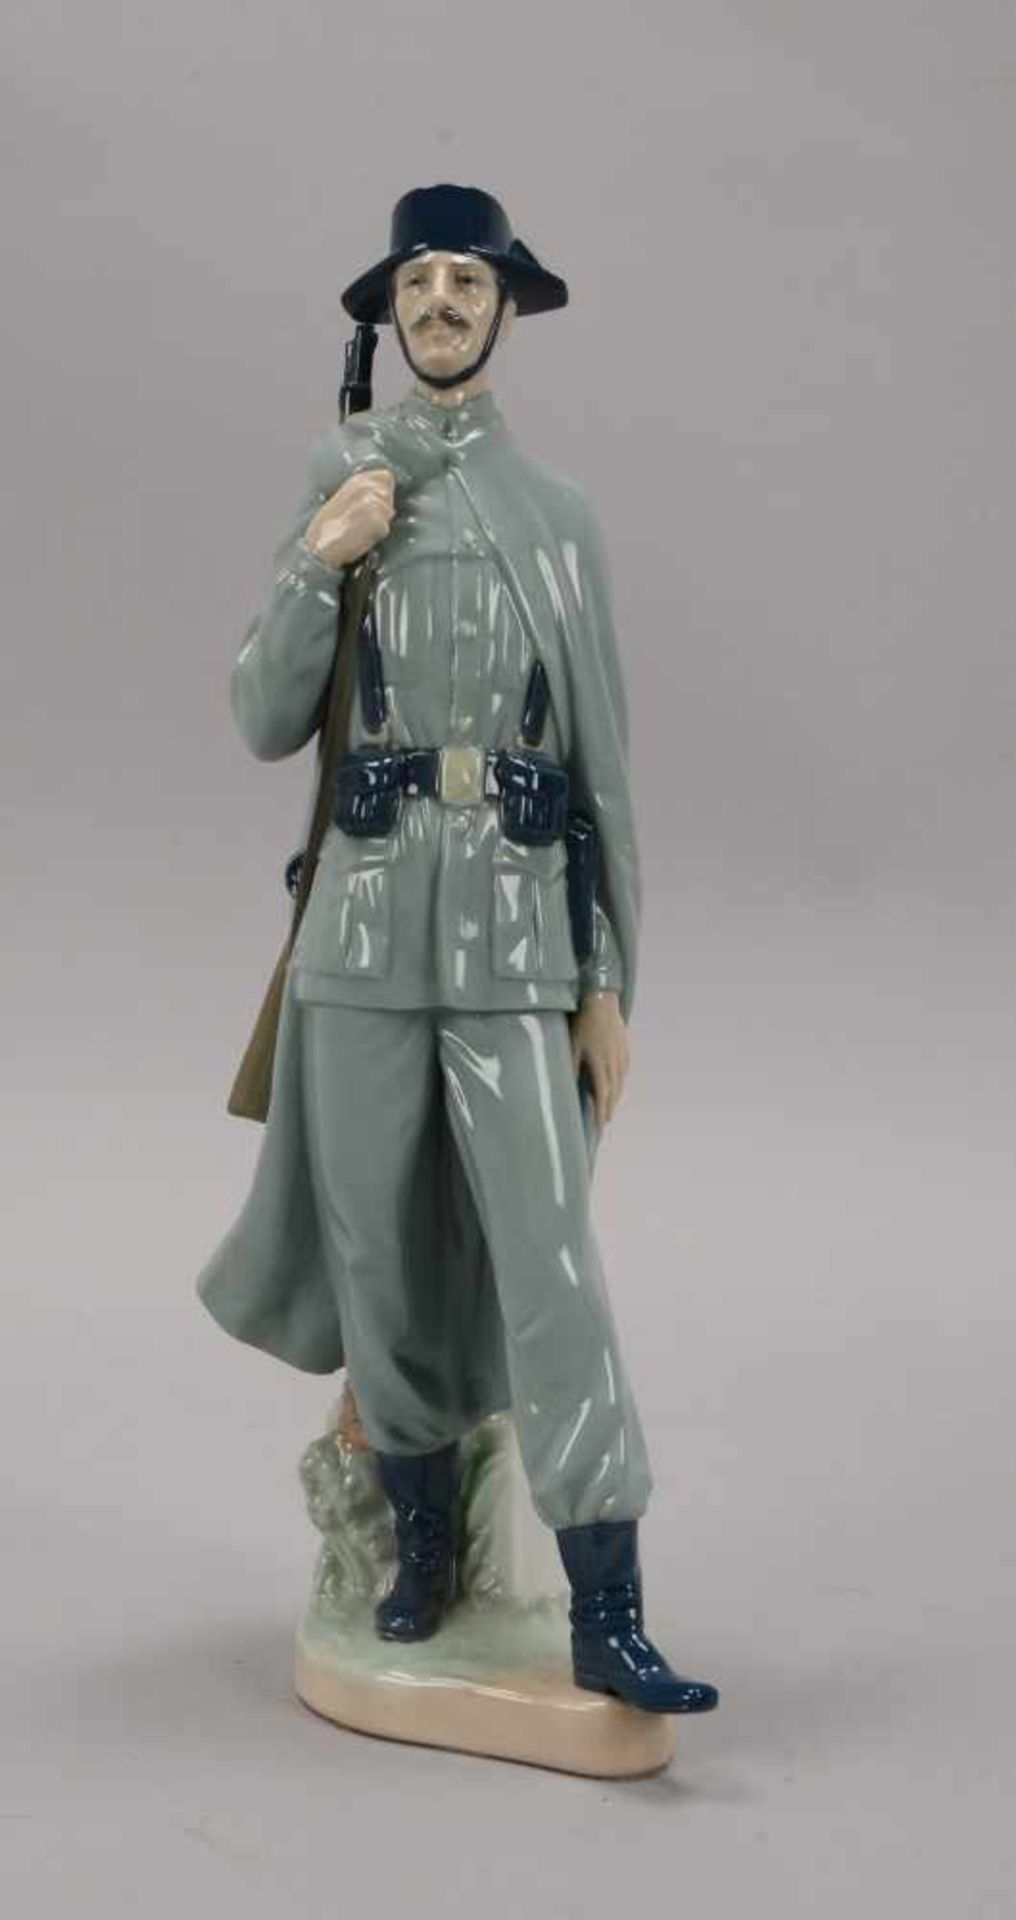 Lladro/Spanien, Porzellanfigur, 'Spanischer Gendarm', pastellige Unterglasurfarben, Figur in